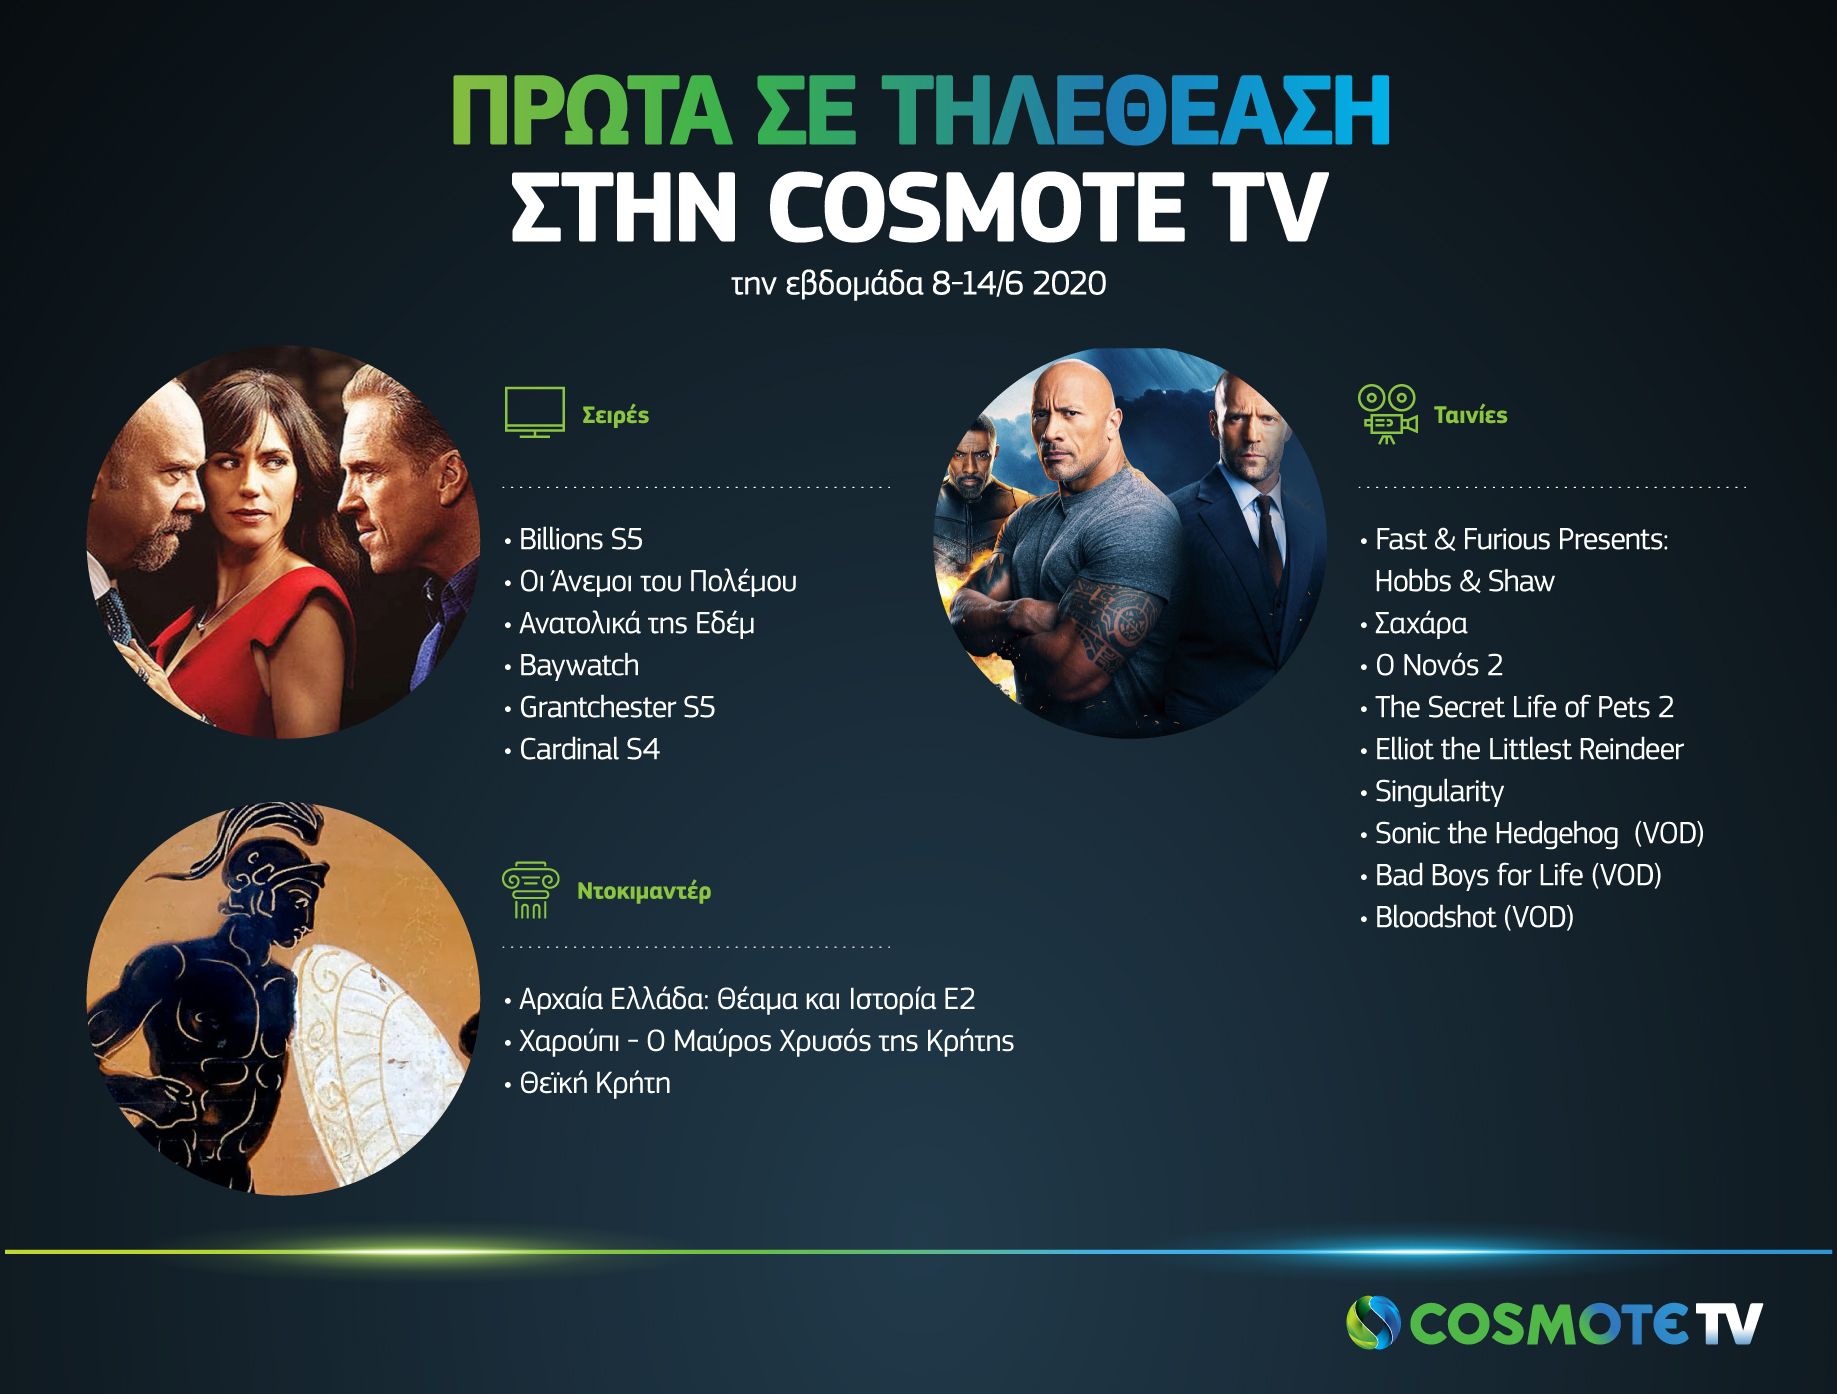 Τι είδαν περισσότερο οι συνδρομητές της Cosmote TV